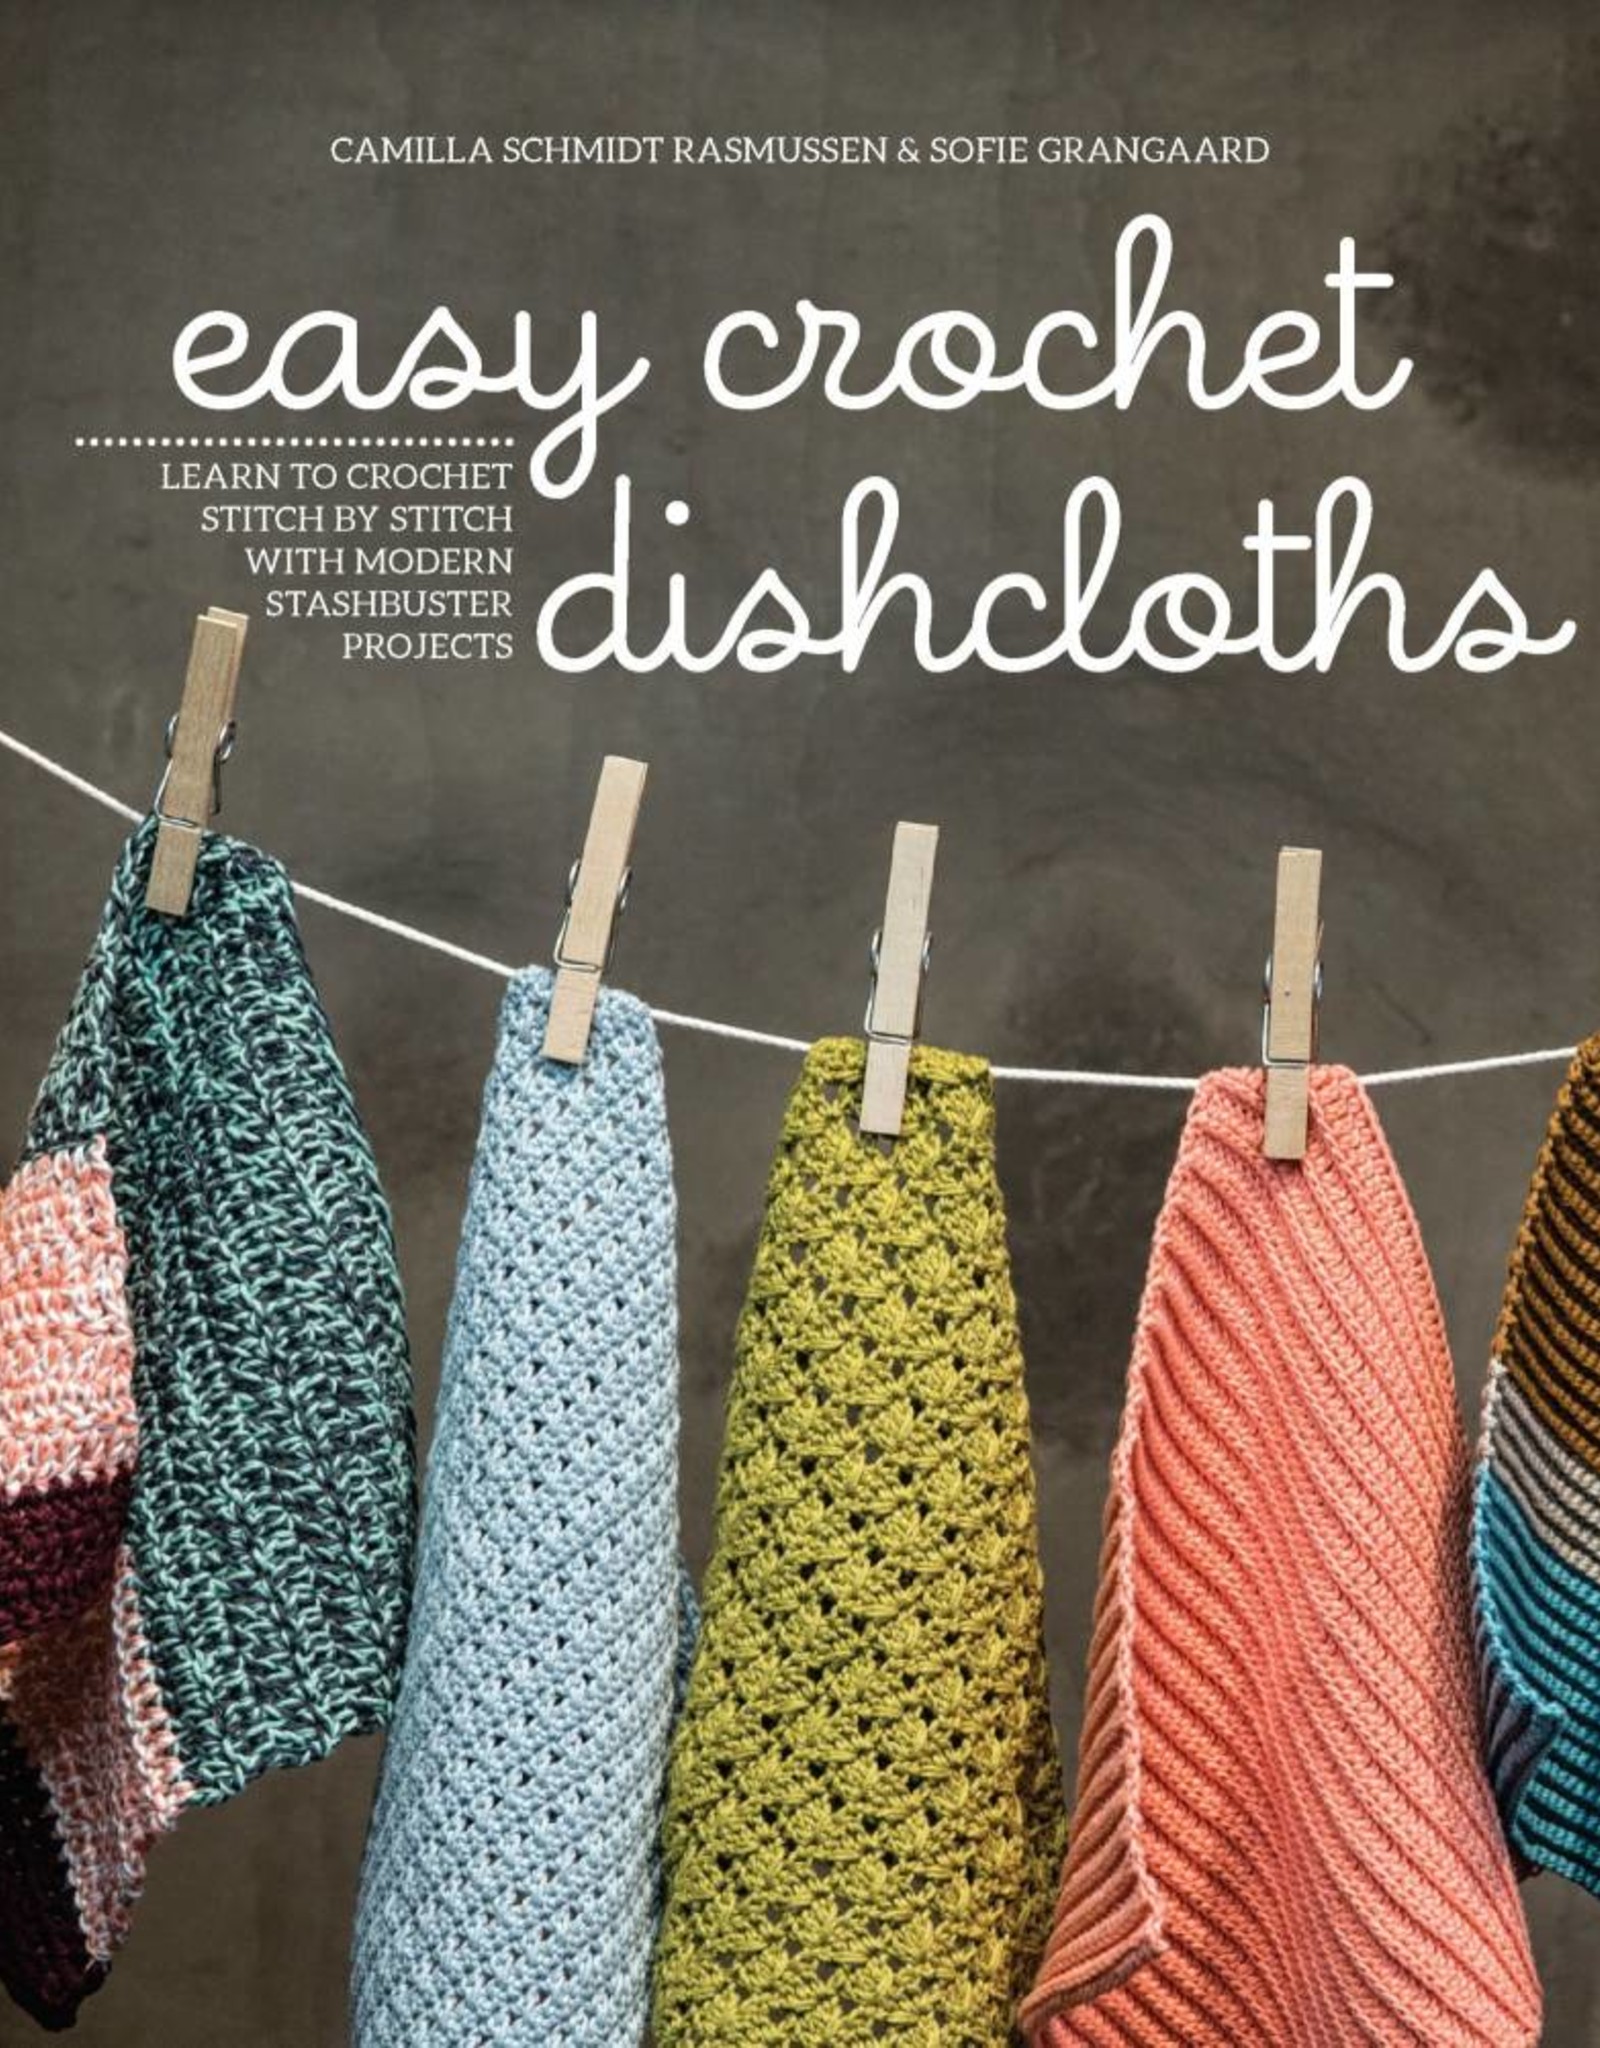 Easy Crochet Dishcloths by Camilla Schmidt Rasmussen and Sofie Grangaard